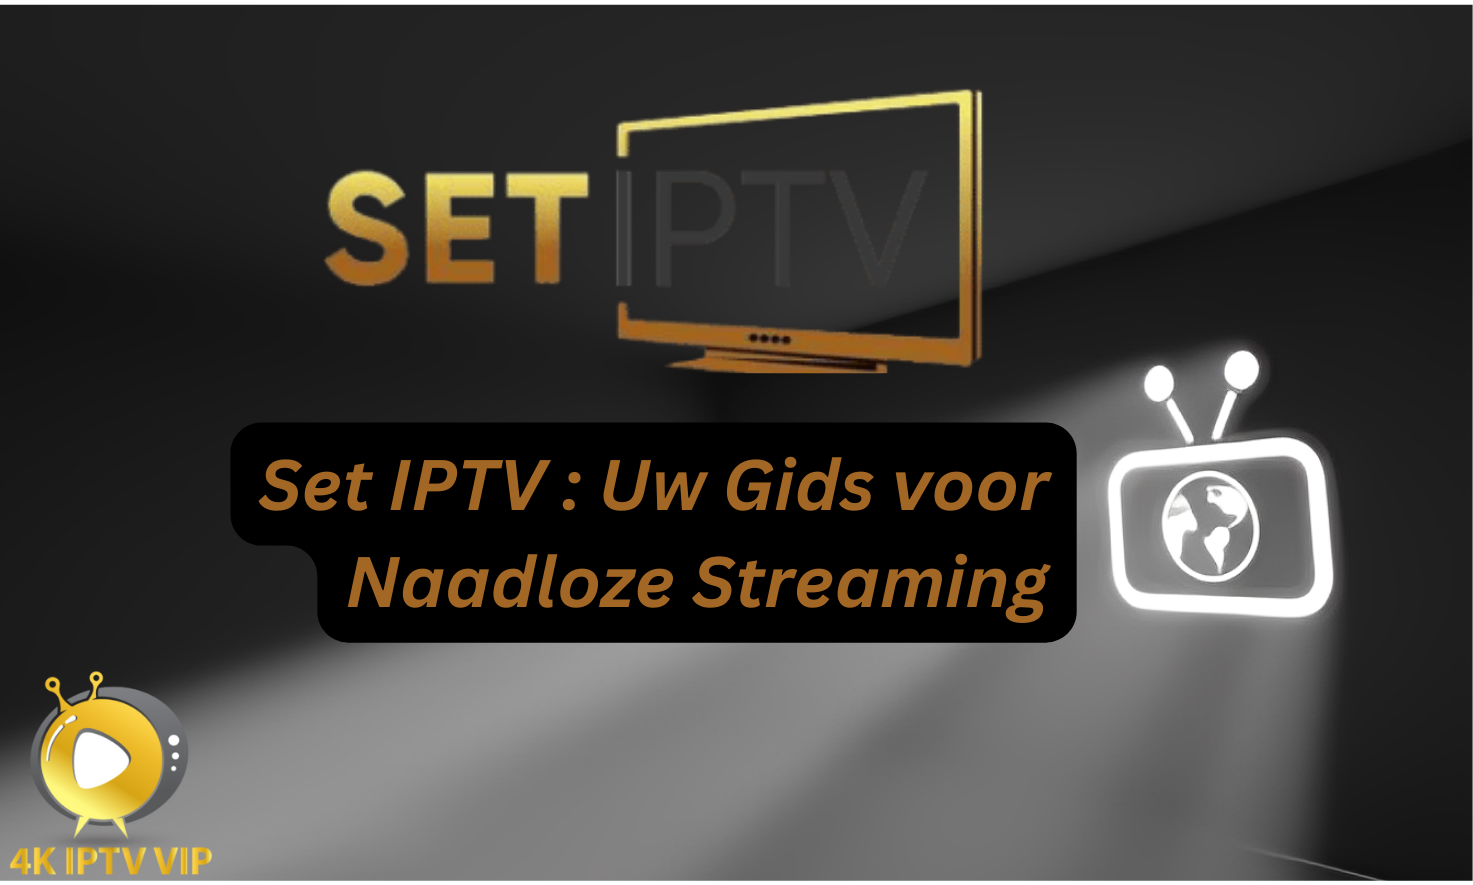 Set IPTV: Uw Gids voor Naadloze Streaming